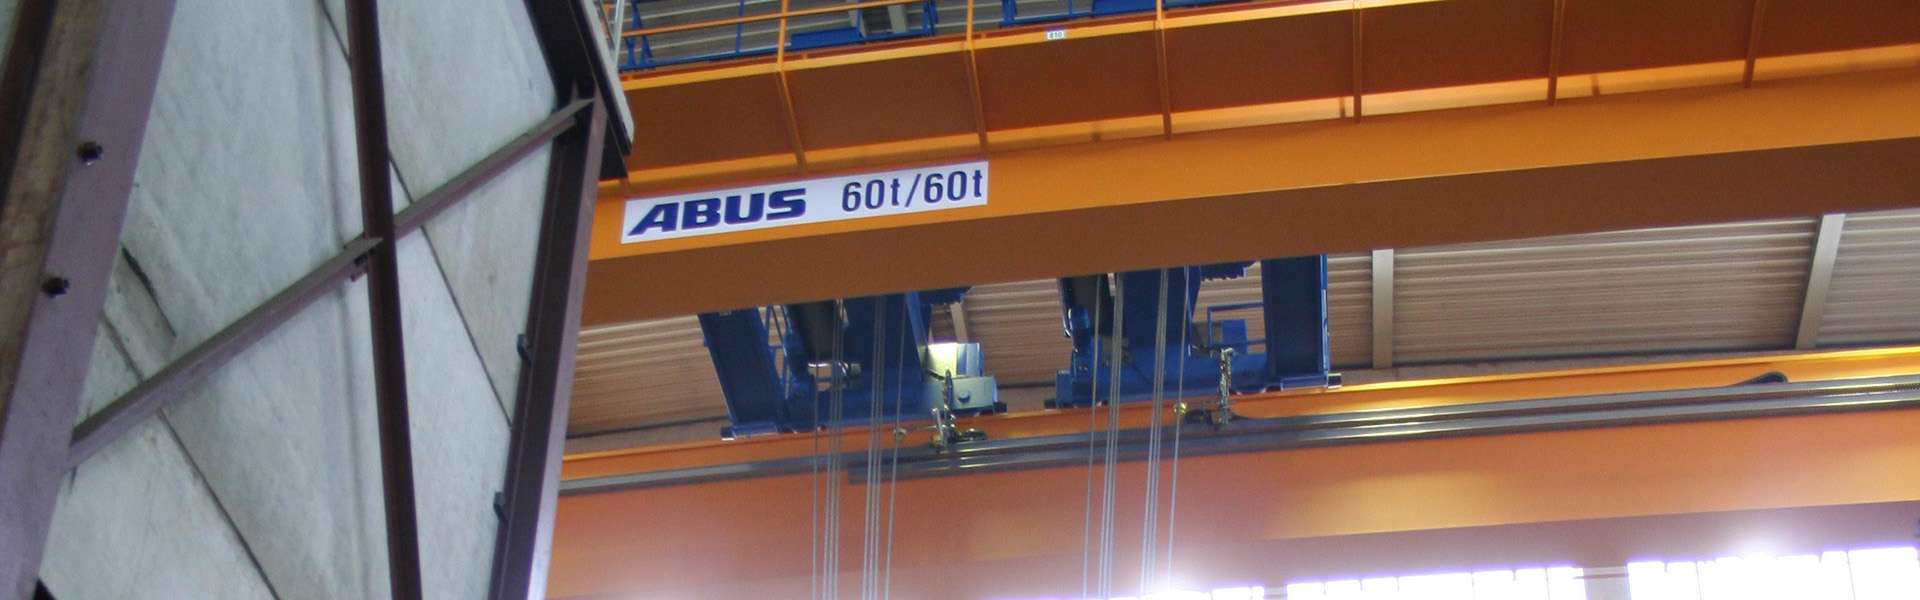 安博重机为德国泵制造商KSB打造高效运输方式